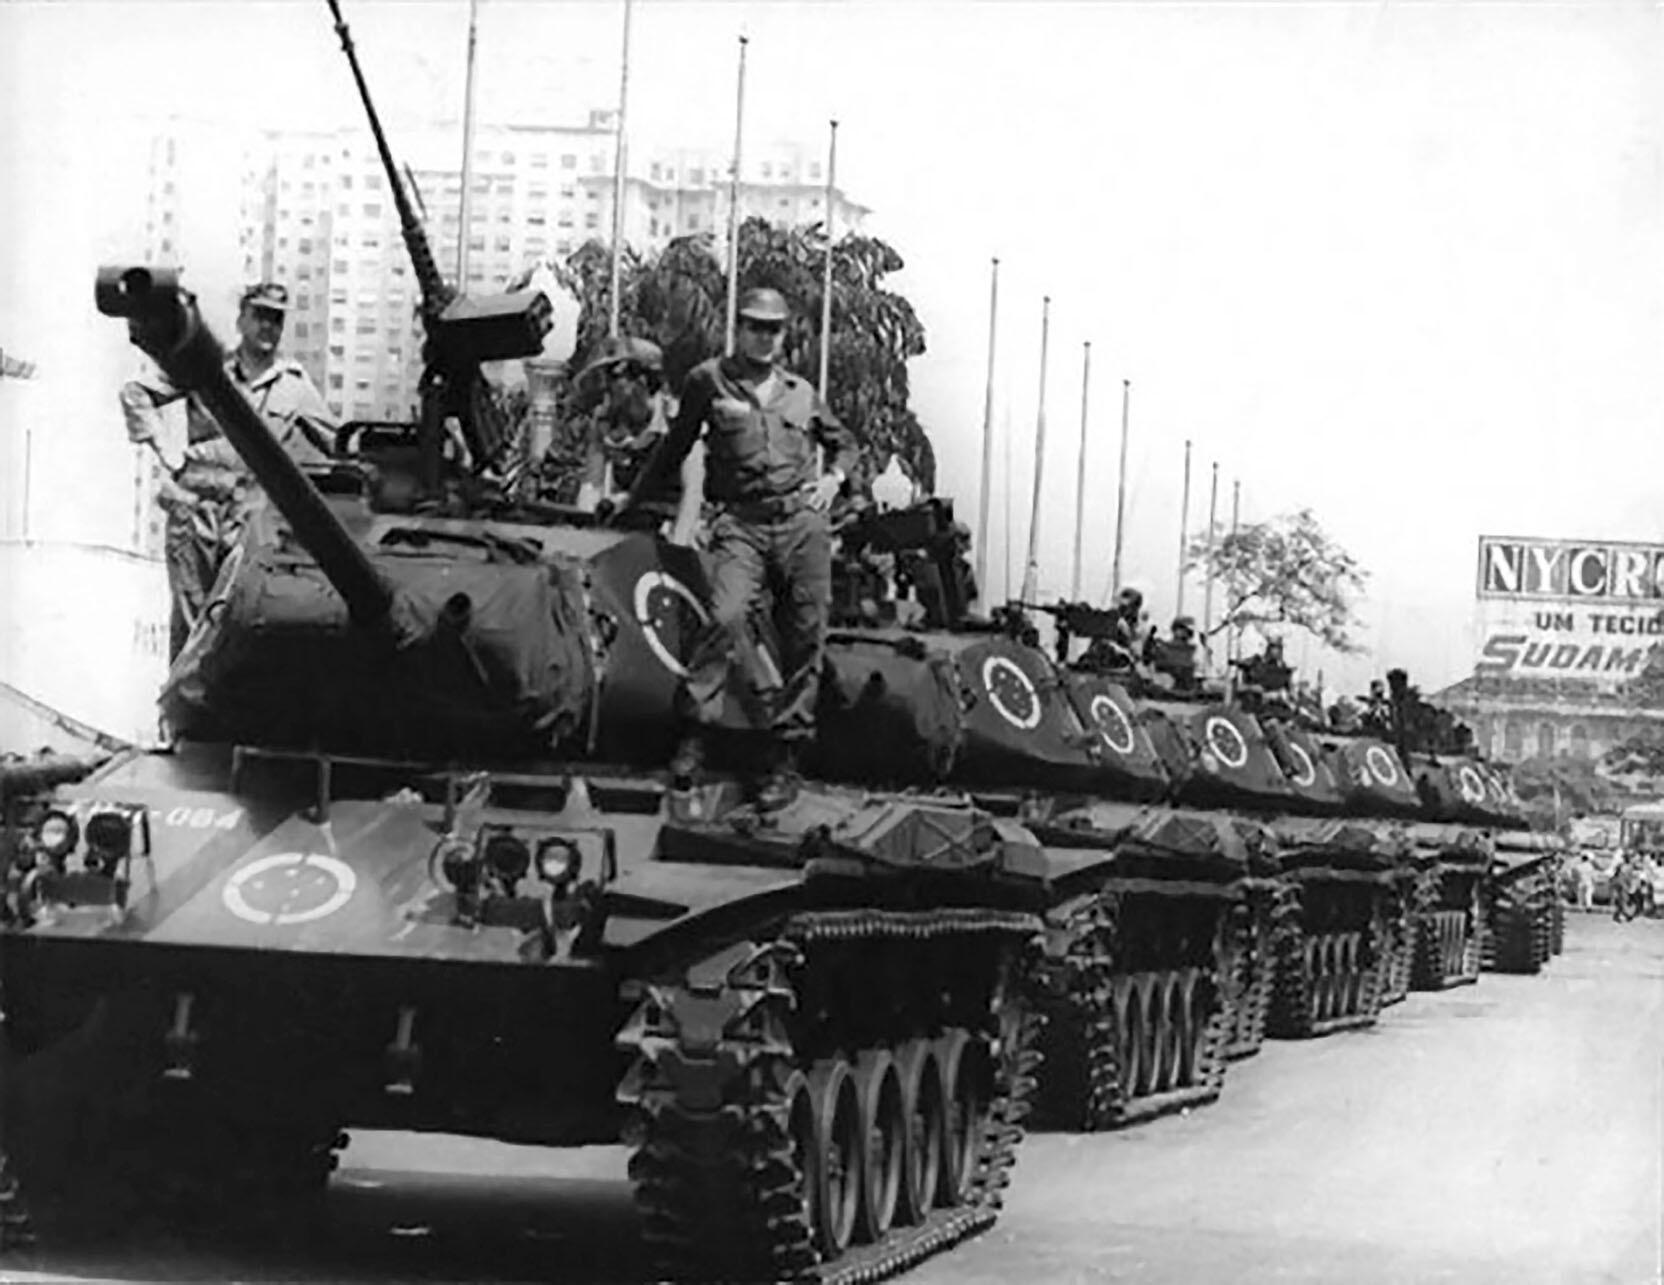 Tanks occupy Avenida Presidente Vargas in Rio de Janeiro in 1968. (Photo courtesy of Correio da Manhã.)